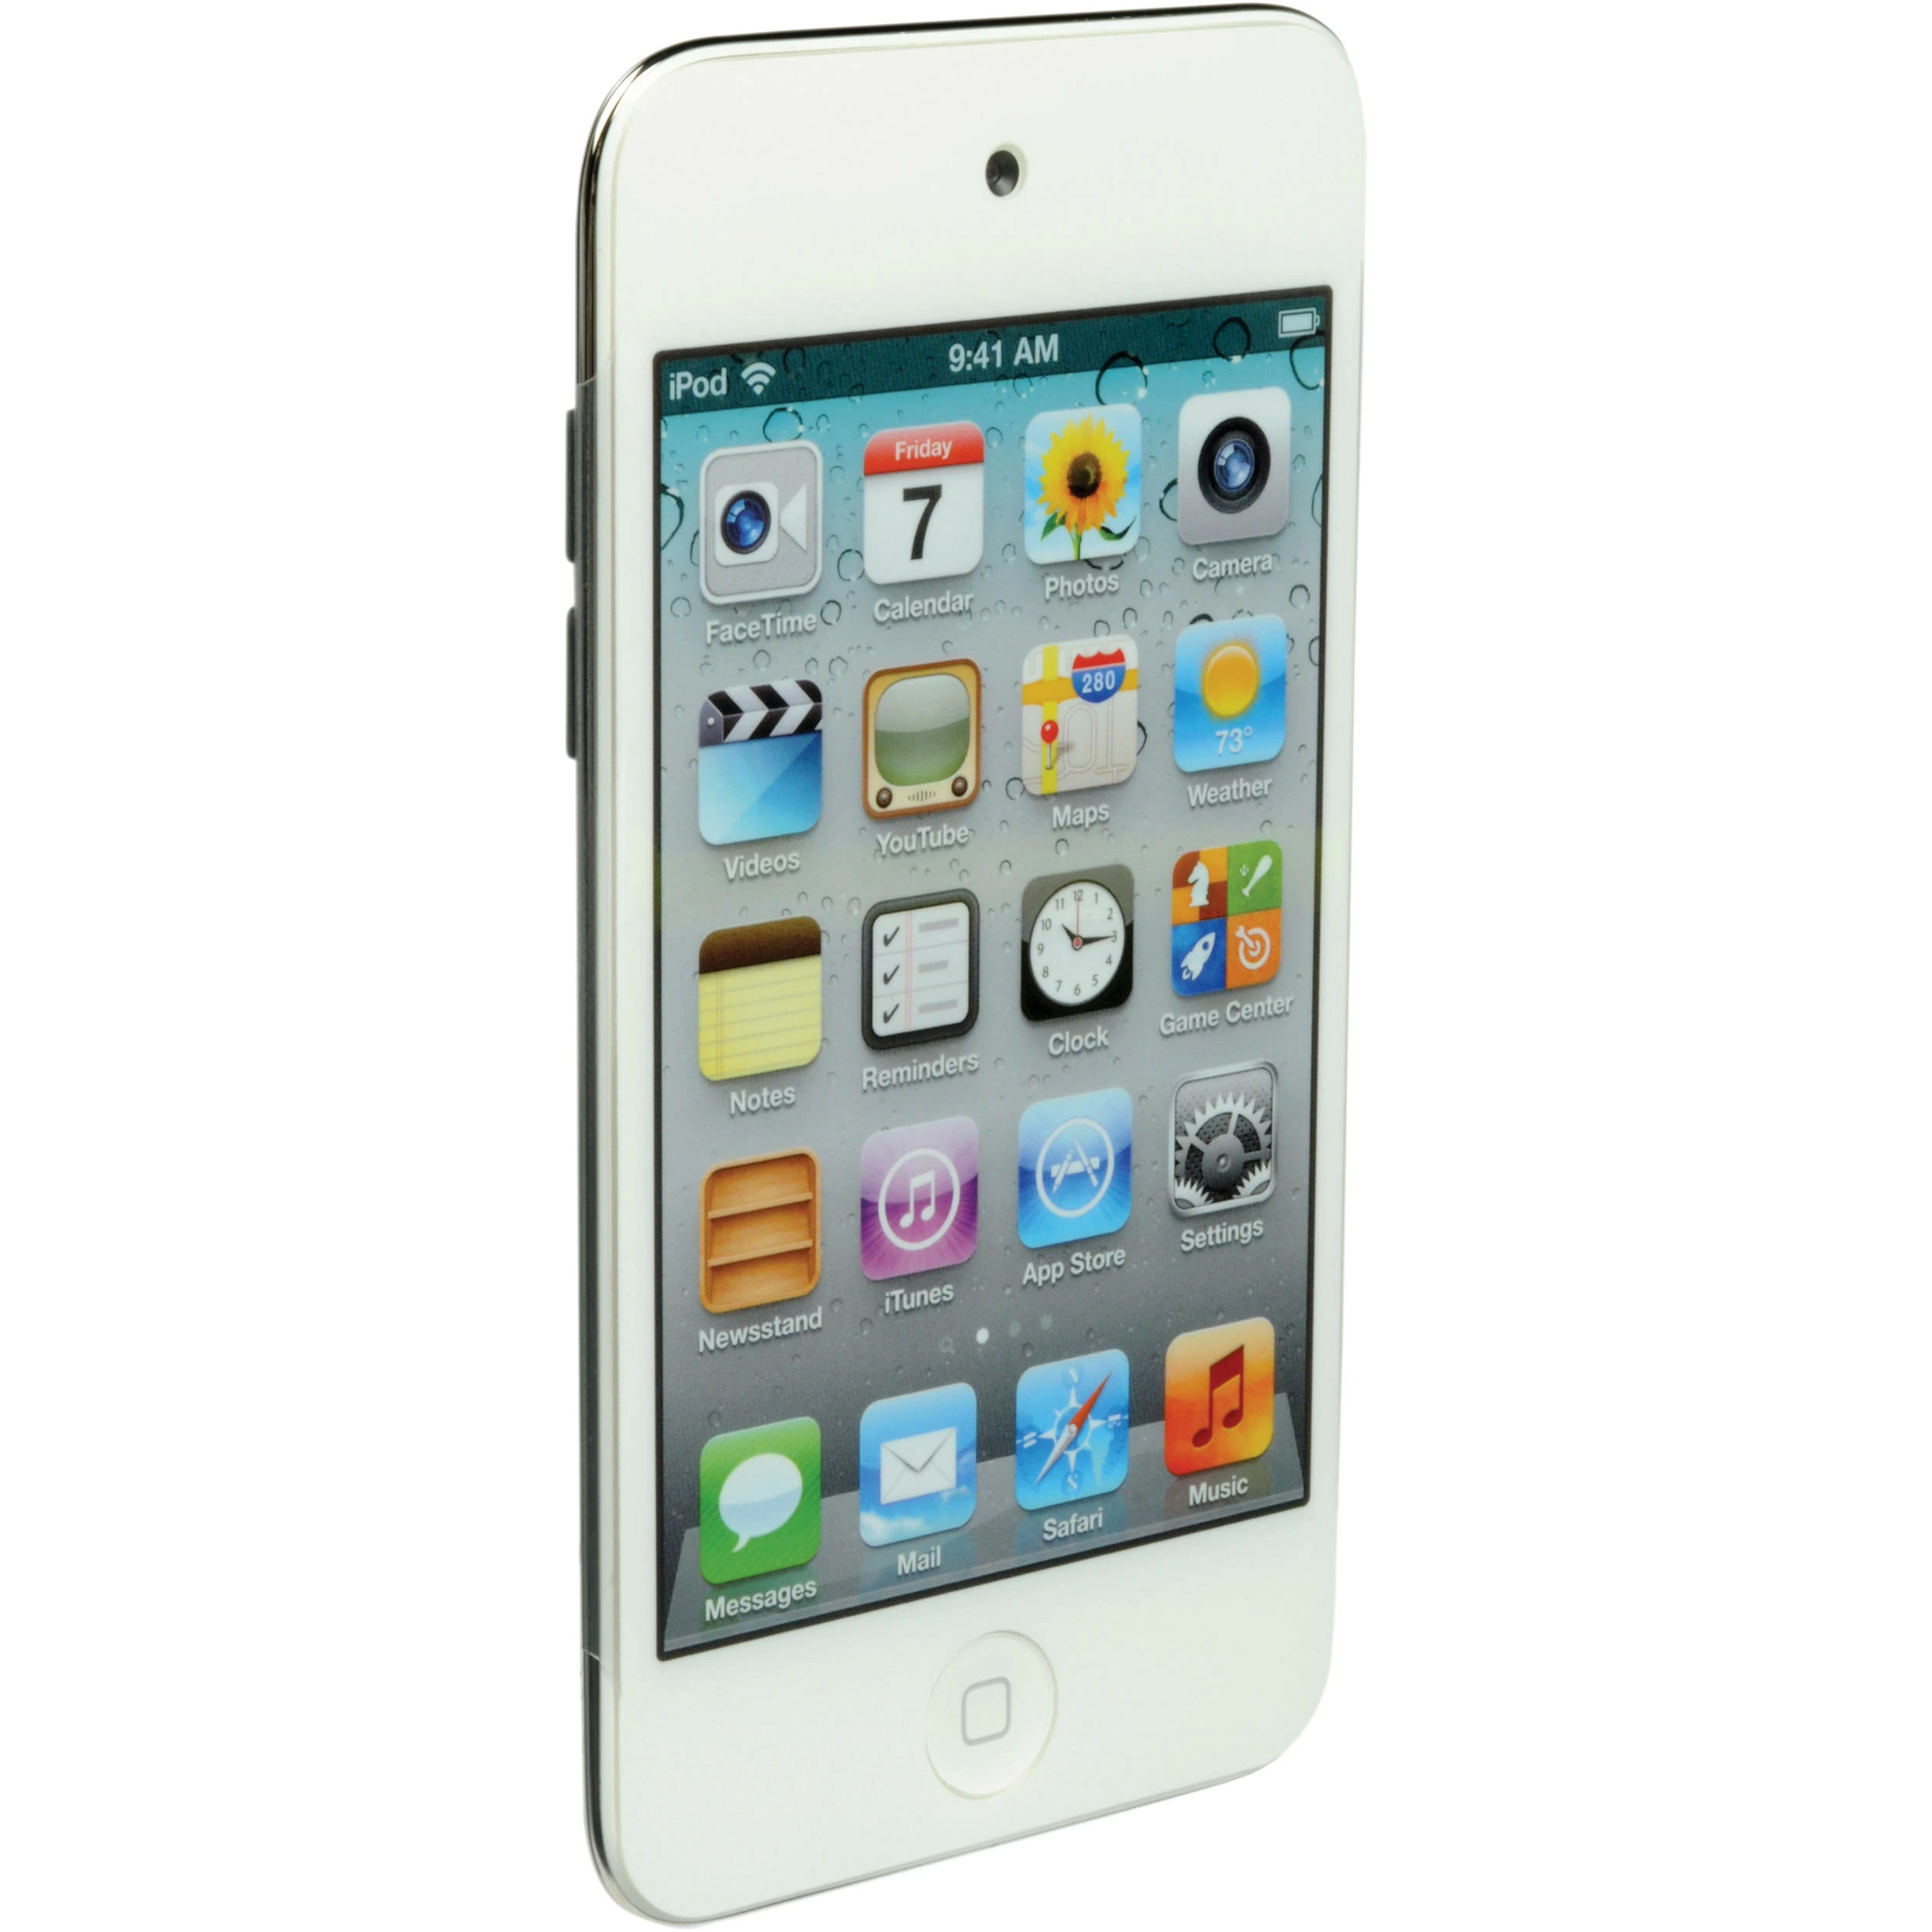 2023年レディースファッション福袋 【送料無料】iPod touch Apple 第4世代 iPod 64GB touch Apple 送料無料】iPod  アップル A1367 アイポッドタッチ 第4世代 本体 touch iPod本体